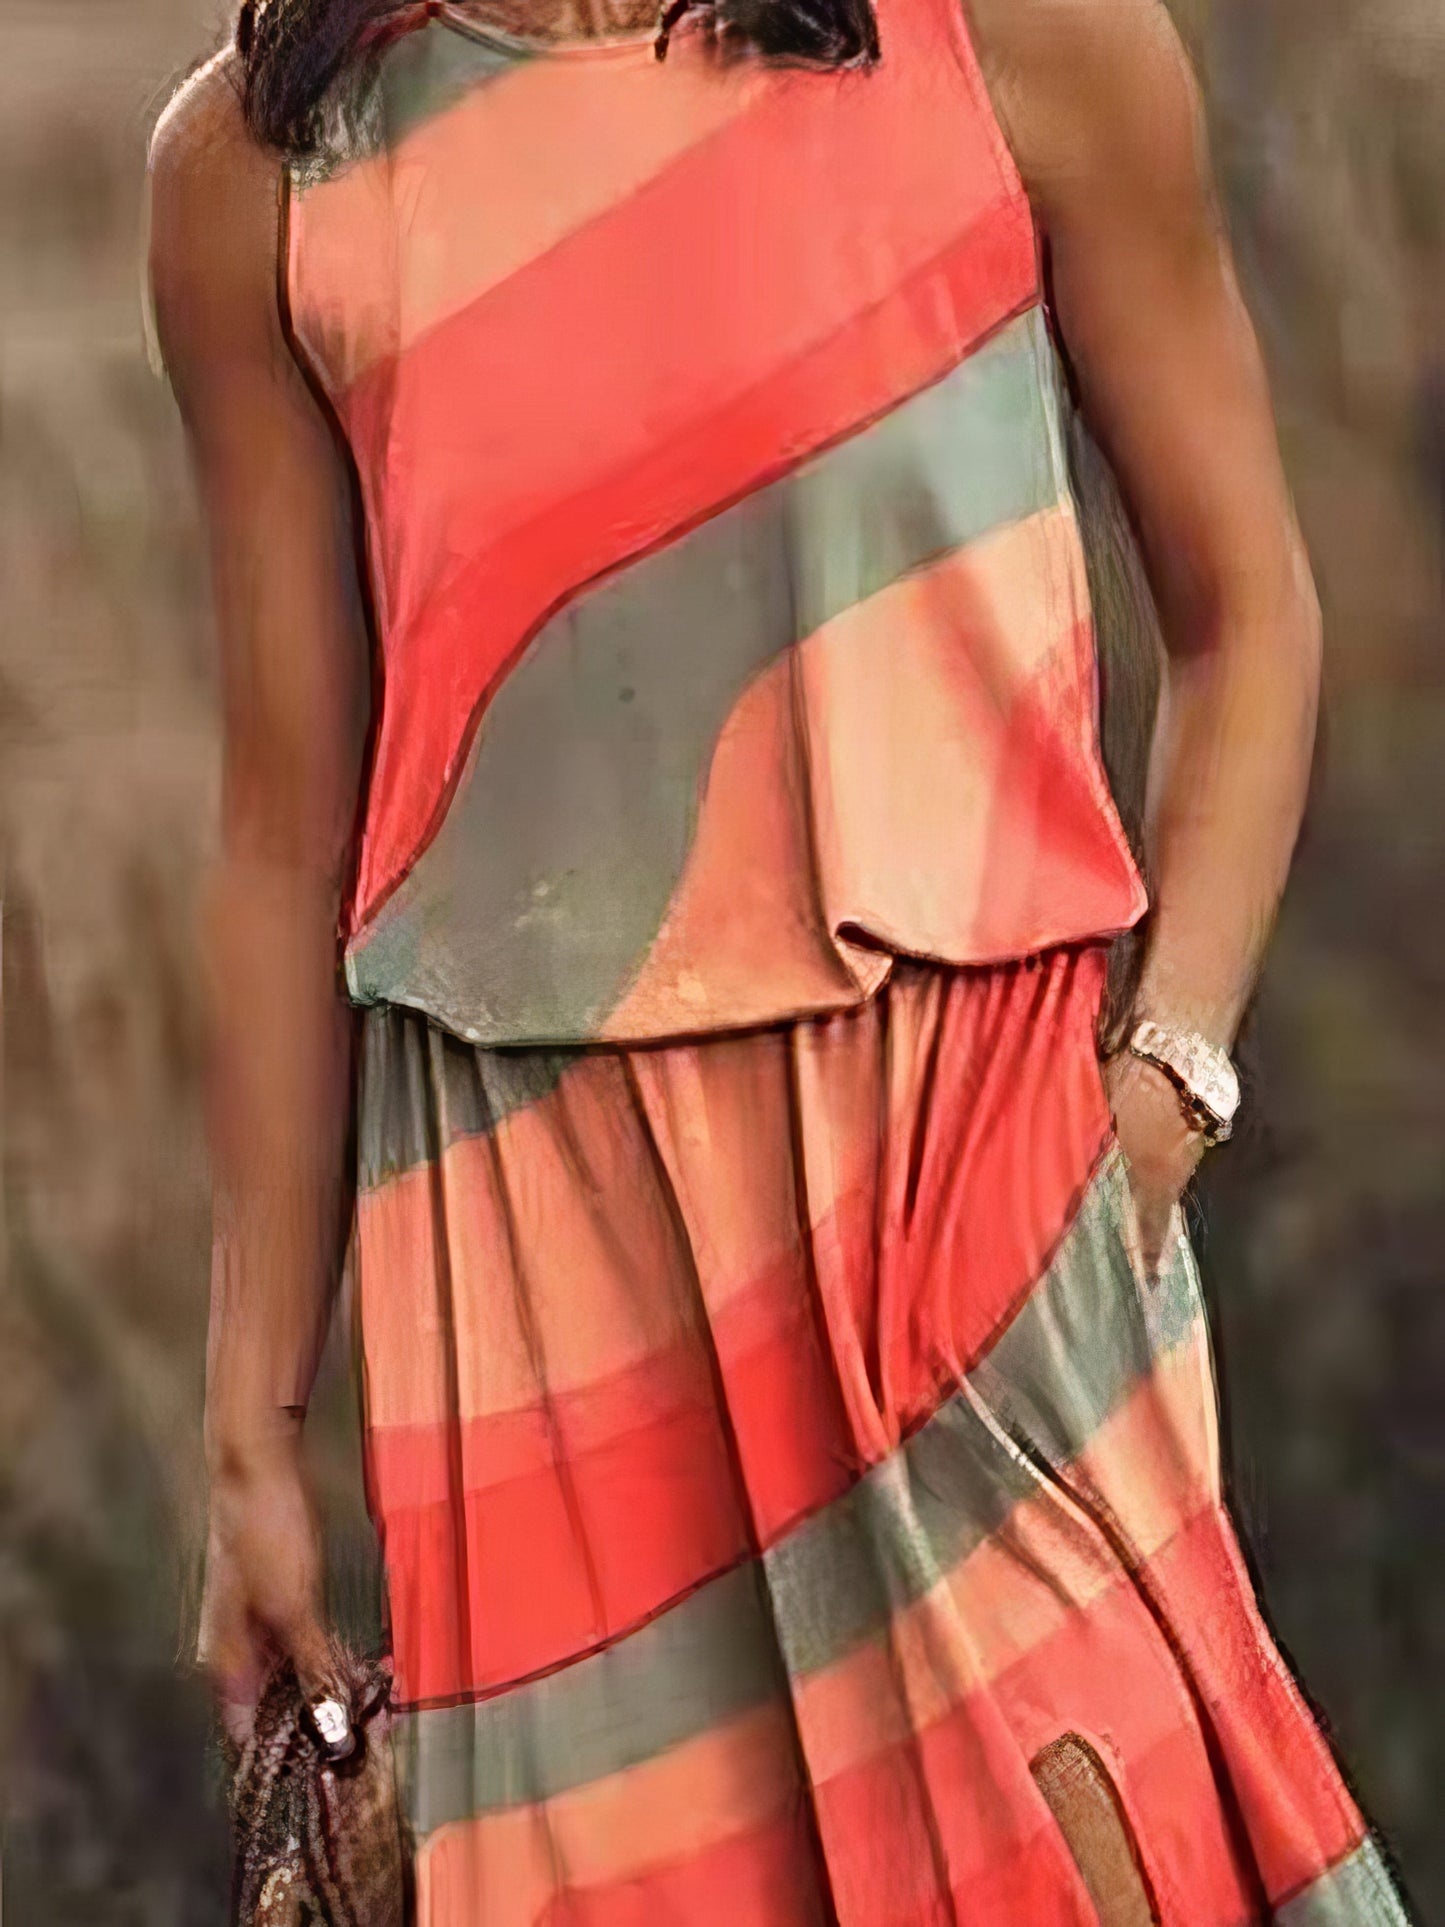 Women's Dresses Multicolor Print Sleeveless Slit Dress